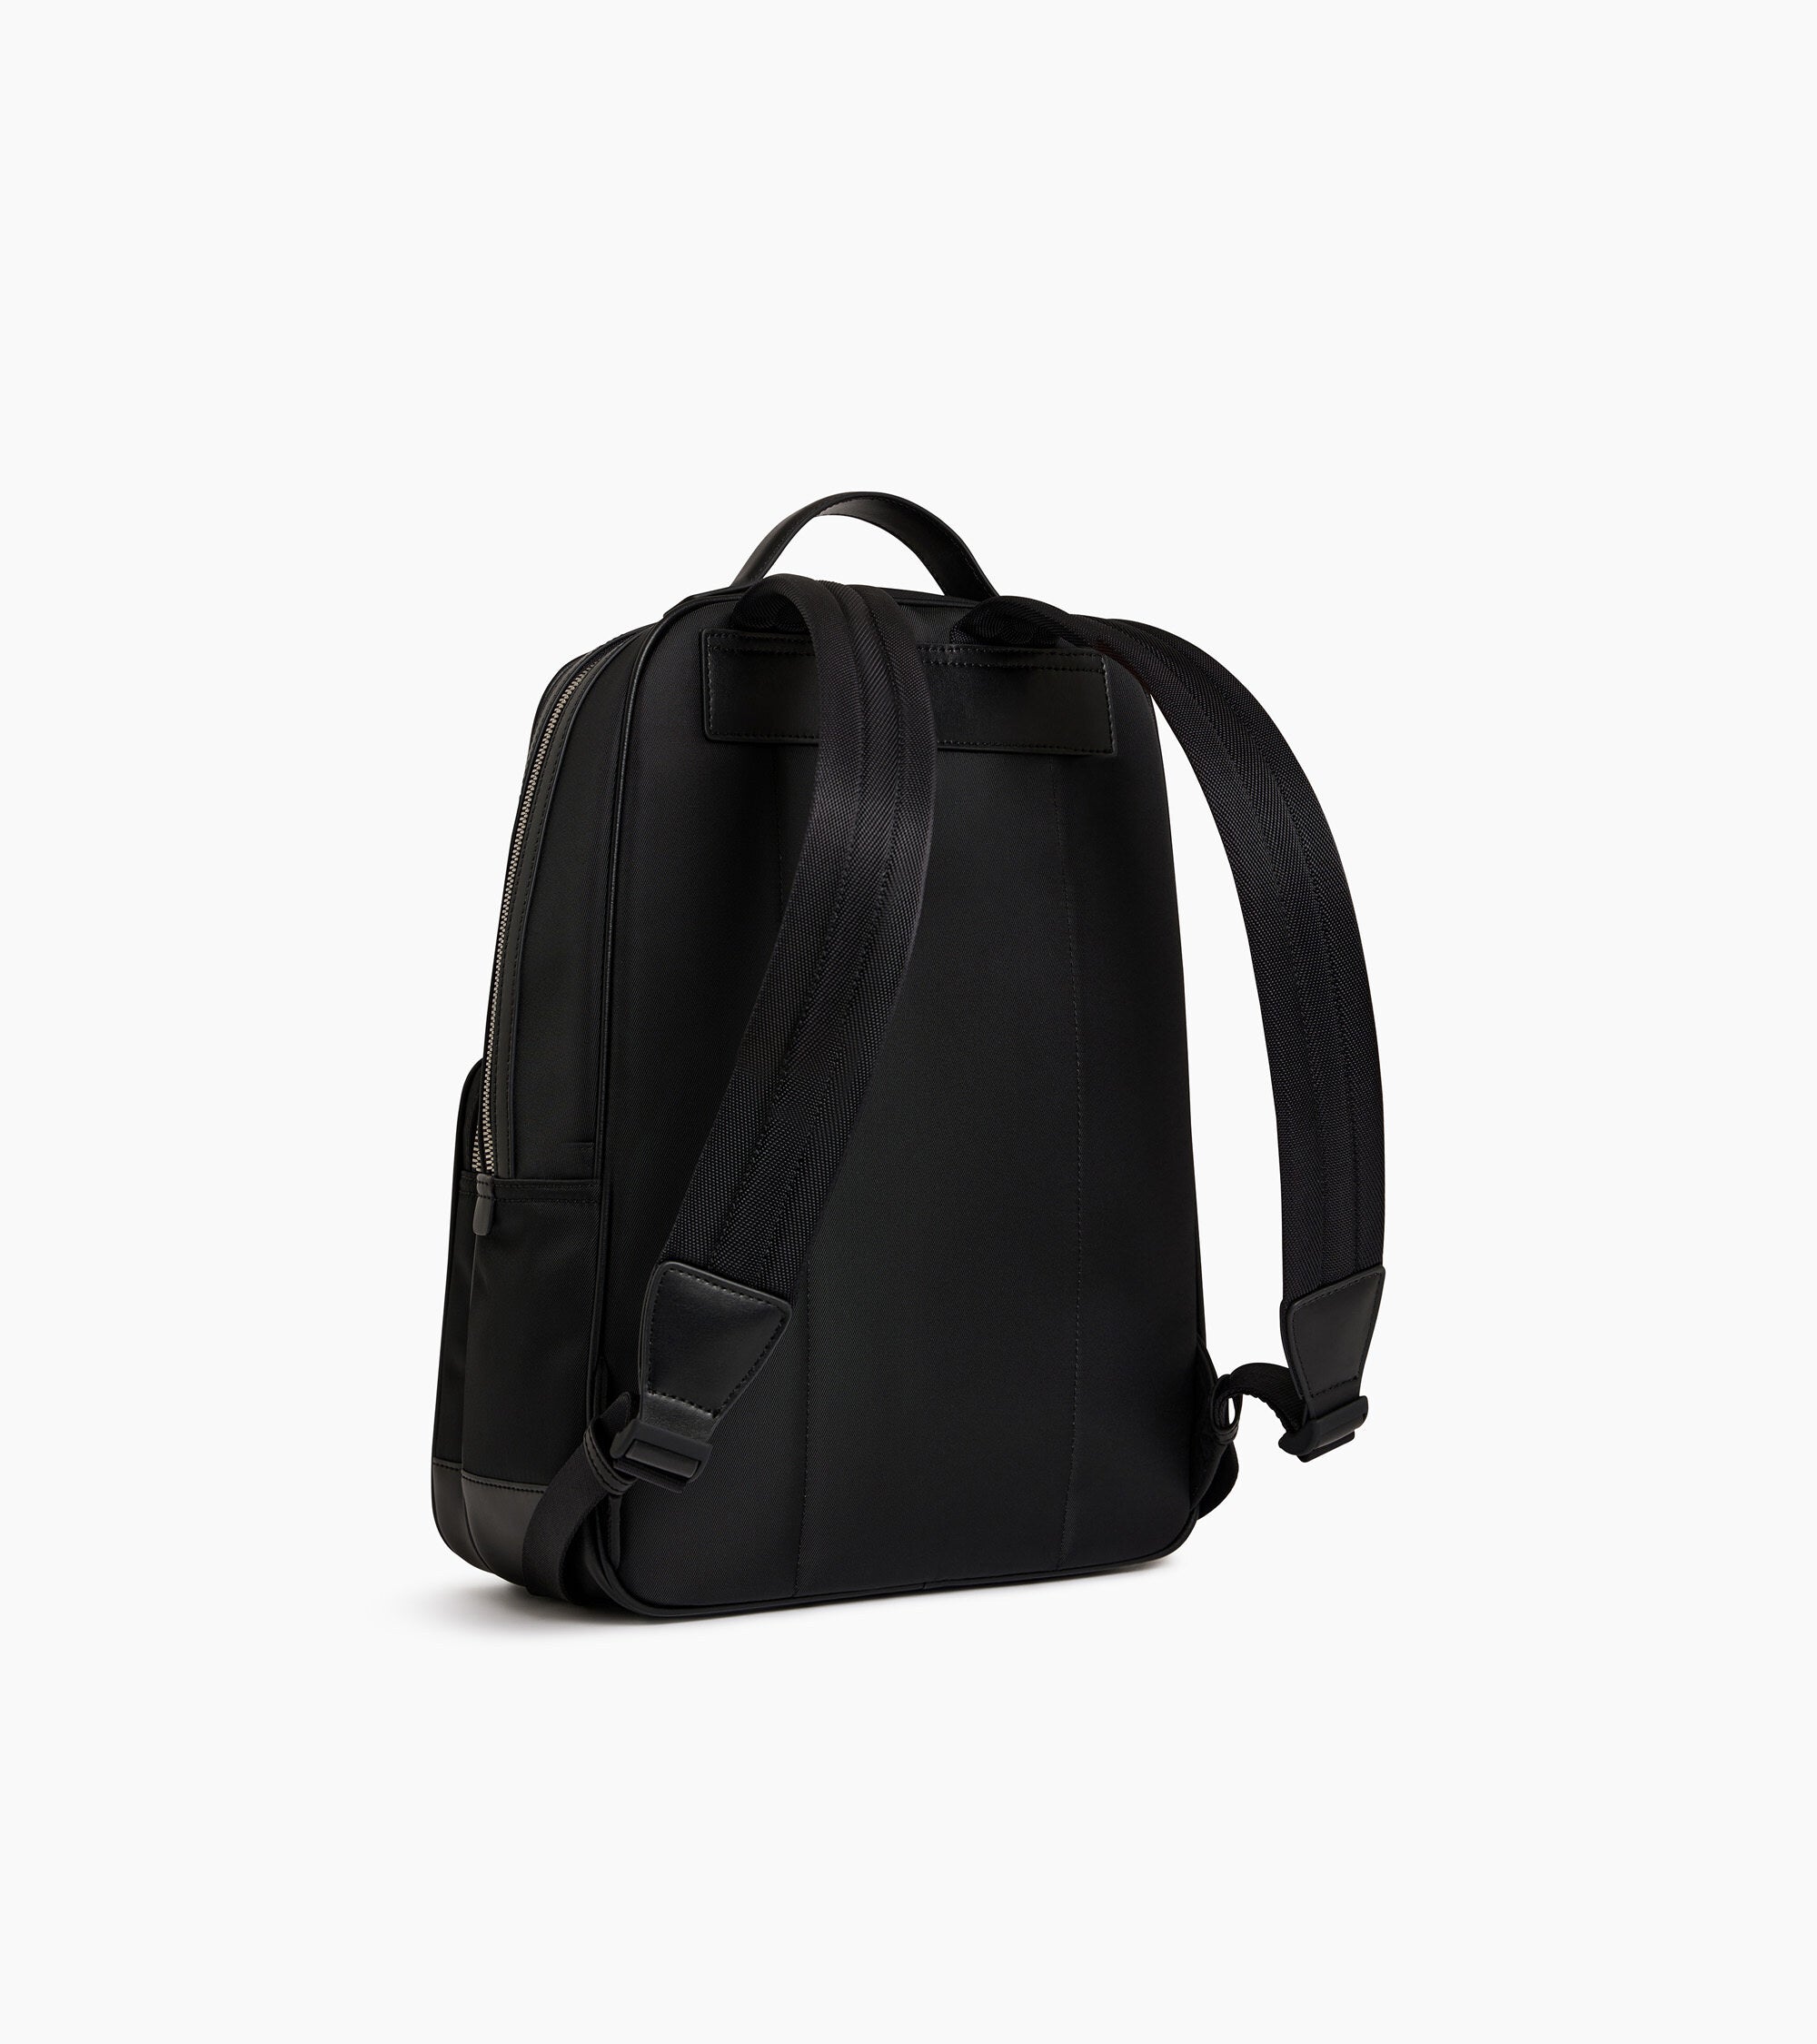 Zipped Gaspard backpack